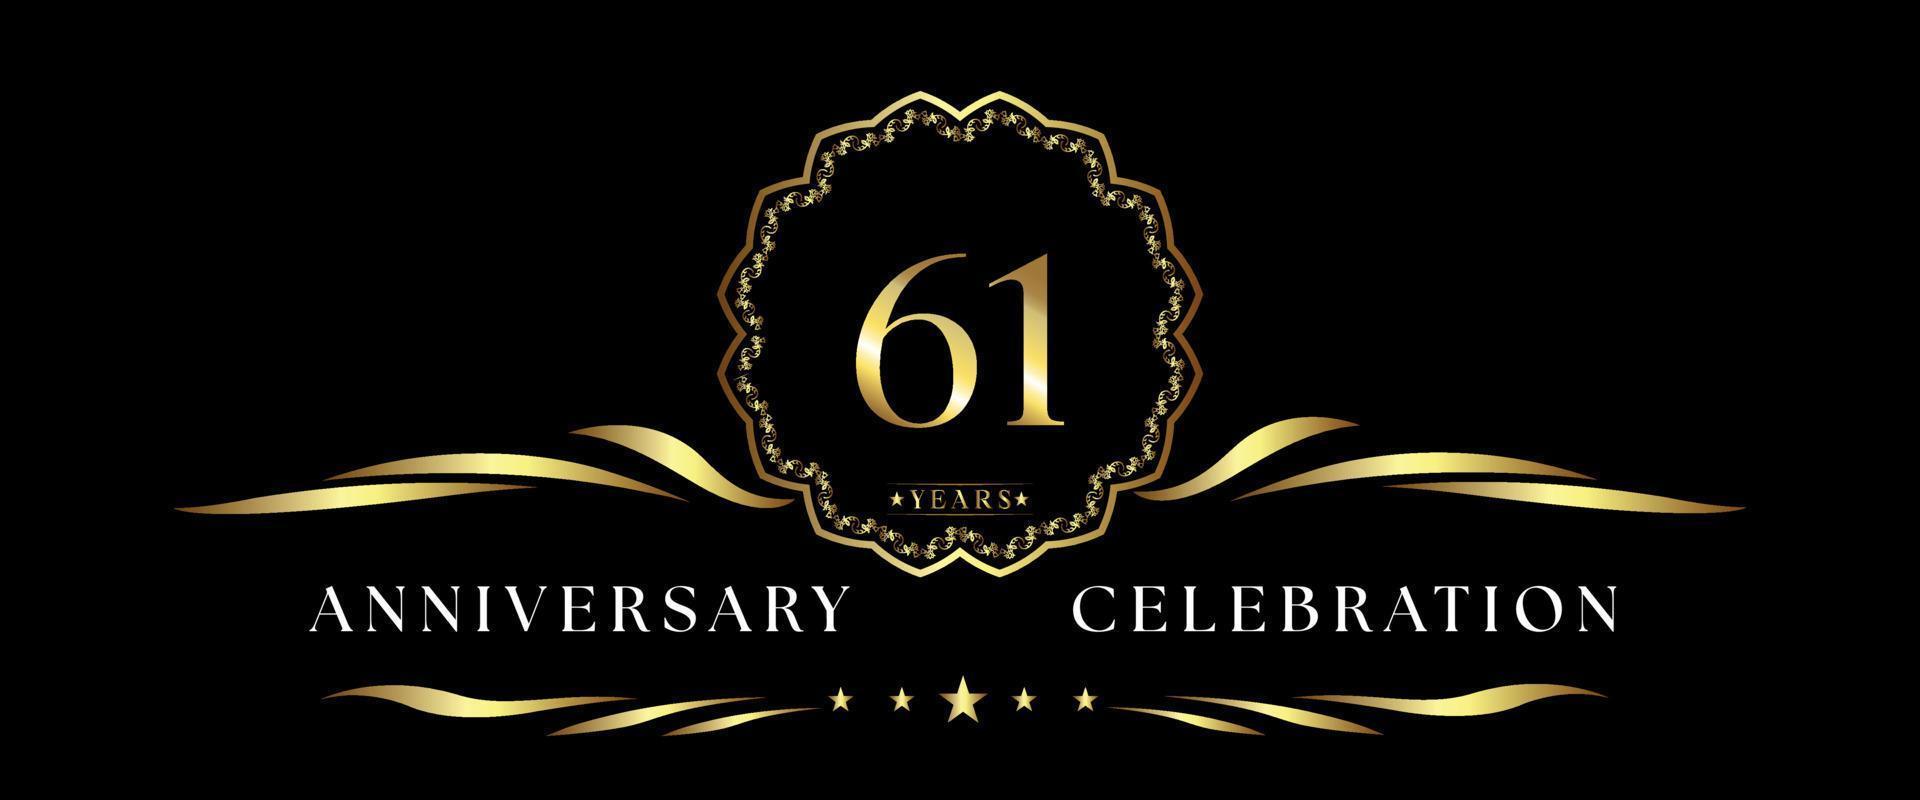 Celebrazione dell'anniversario di 61 anni con cornice decorativa dorata isolata su sfondo nero. disegno vettoriale per biglietto di auguri, festa di compleanno, matrimonio, festa evento, cerimonia. Logo dell'anniversario di 61 anni.